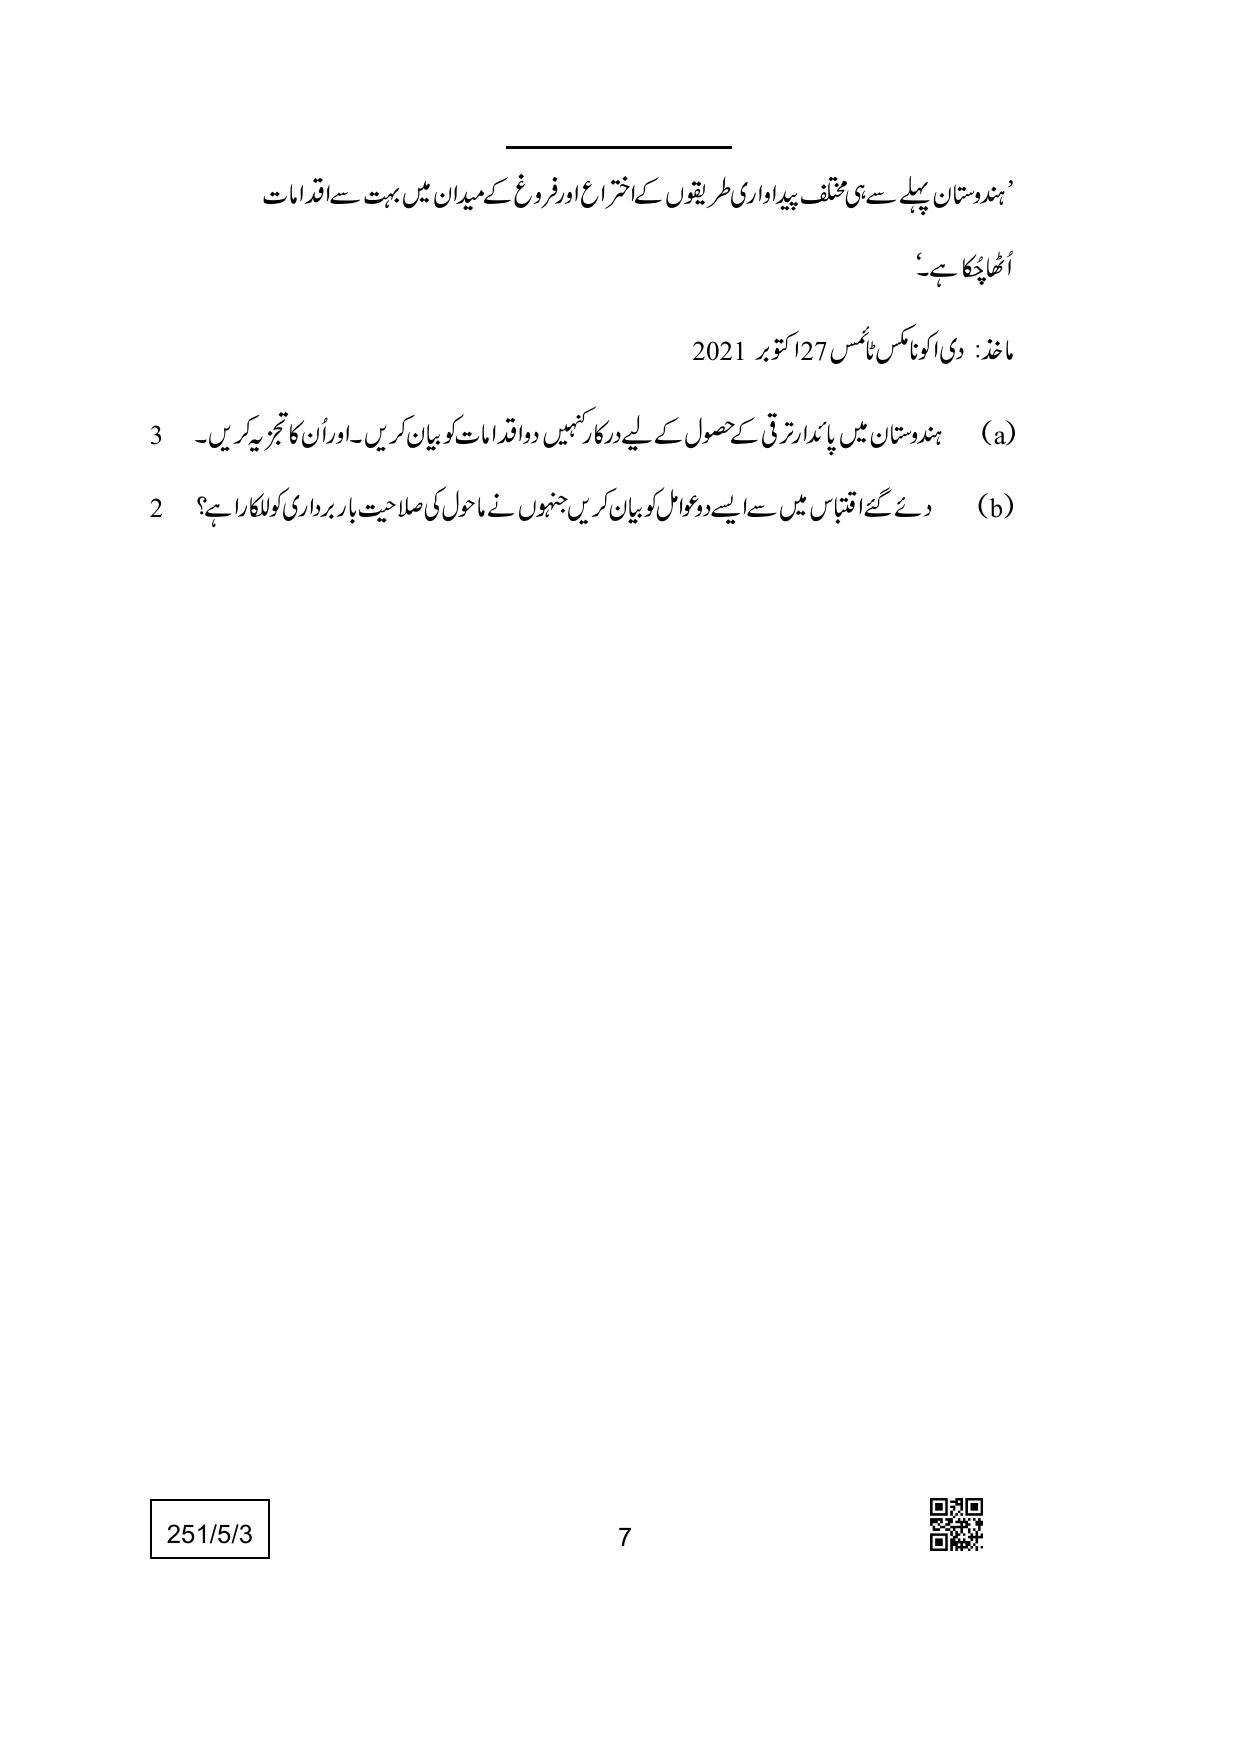 CBSE Class 12 251-5-3 (Economics) Urdu Version 2022 Question Paper - Page 7